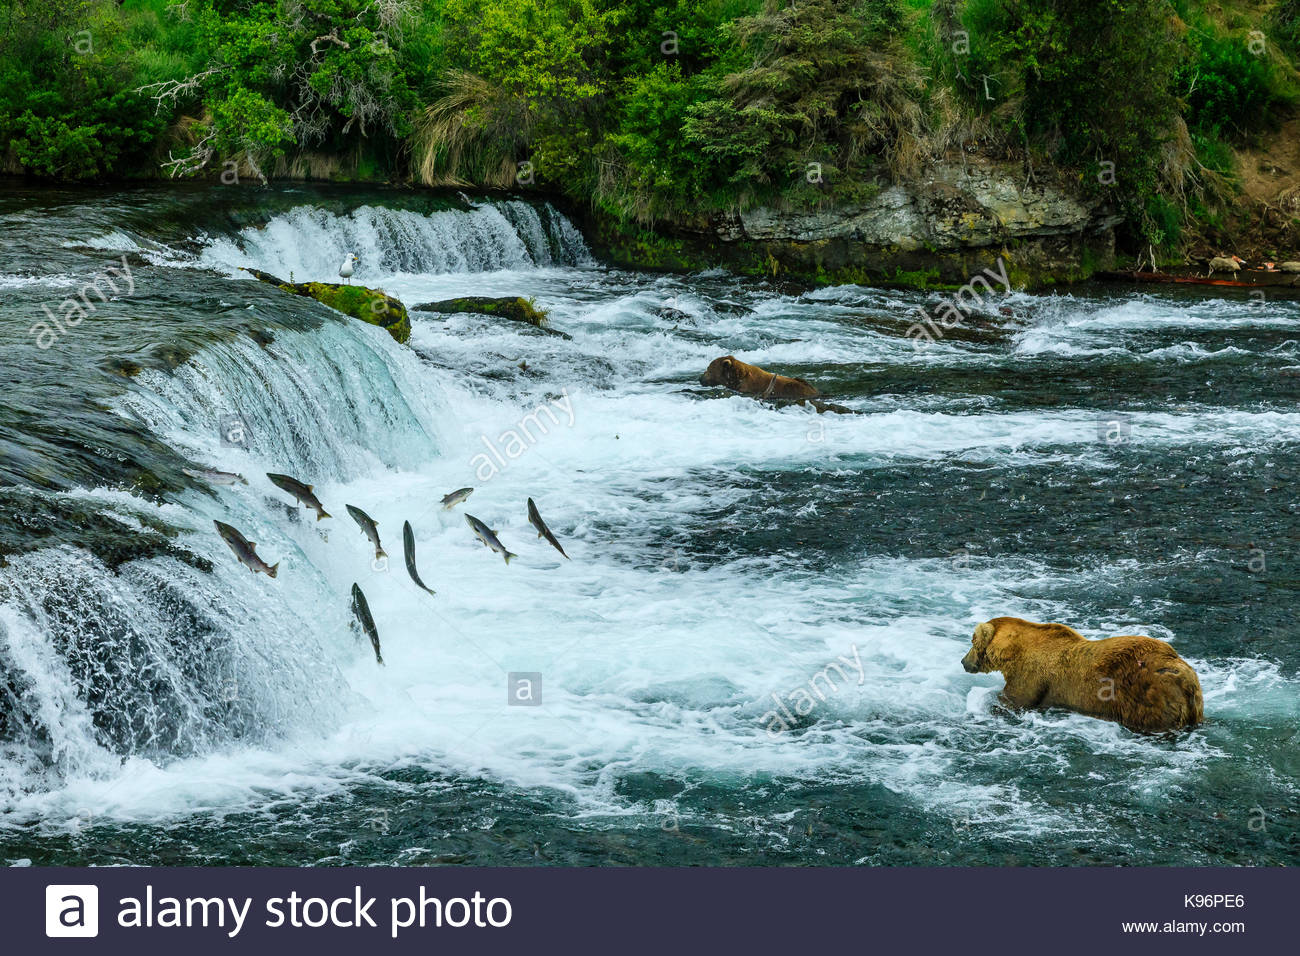 Braunbären, Ursus arctos, Angeln für sockeye Lachse unter Brooks Falls. Stockfoto